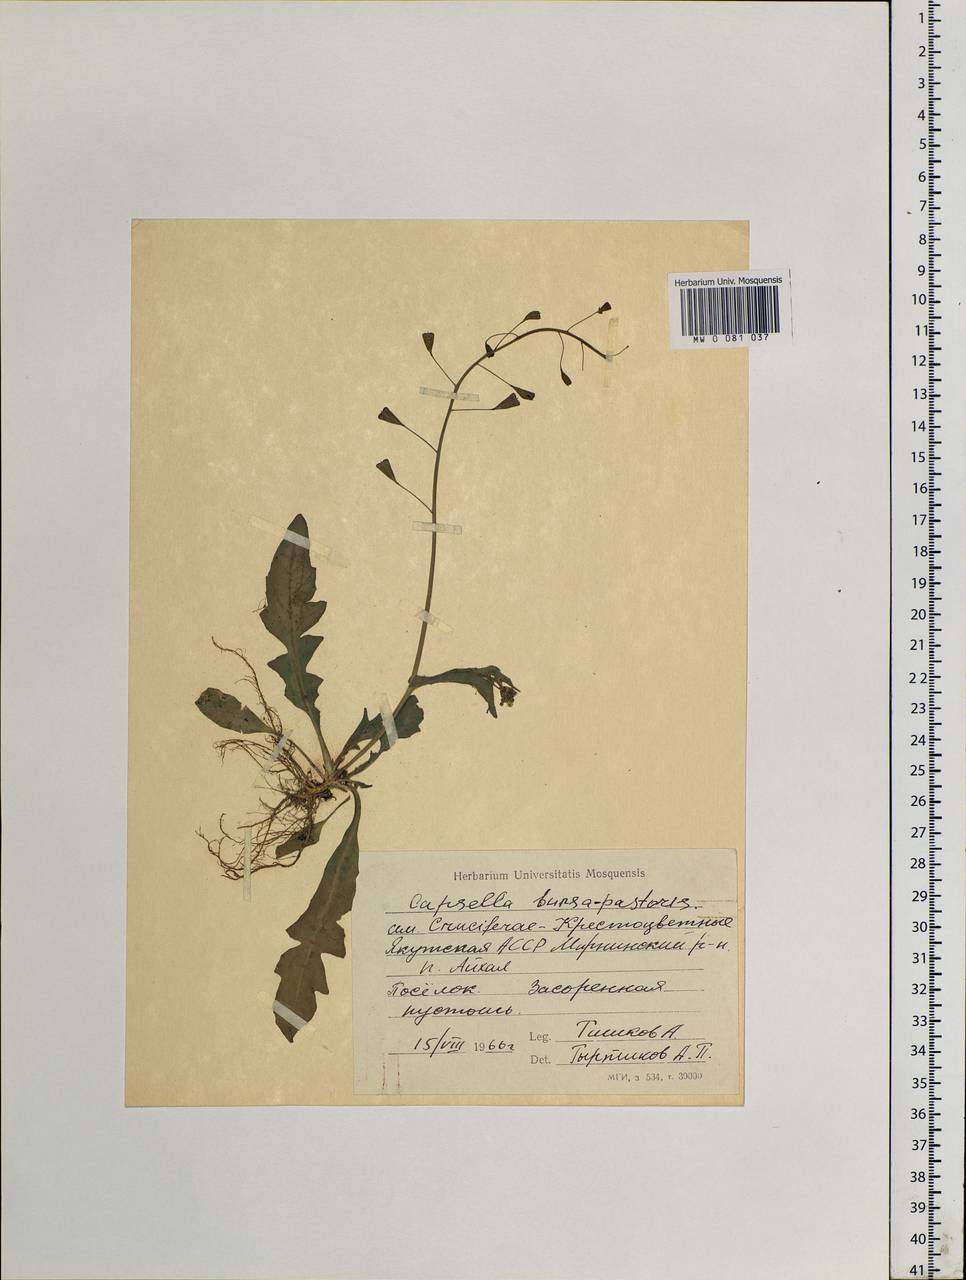 Capsella bursa-pastoris (L.) Medik., Siberia, Yakutia (S5) (Russia)